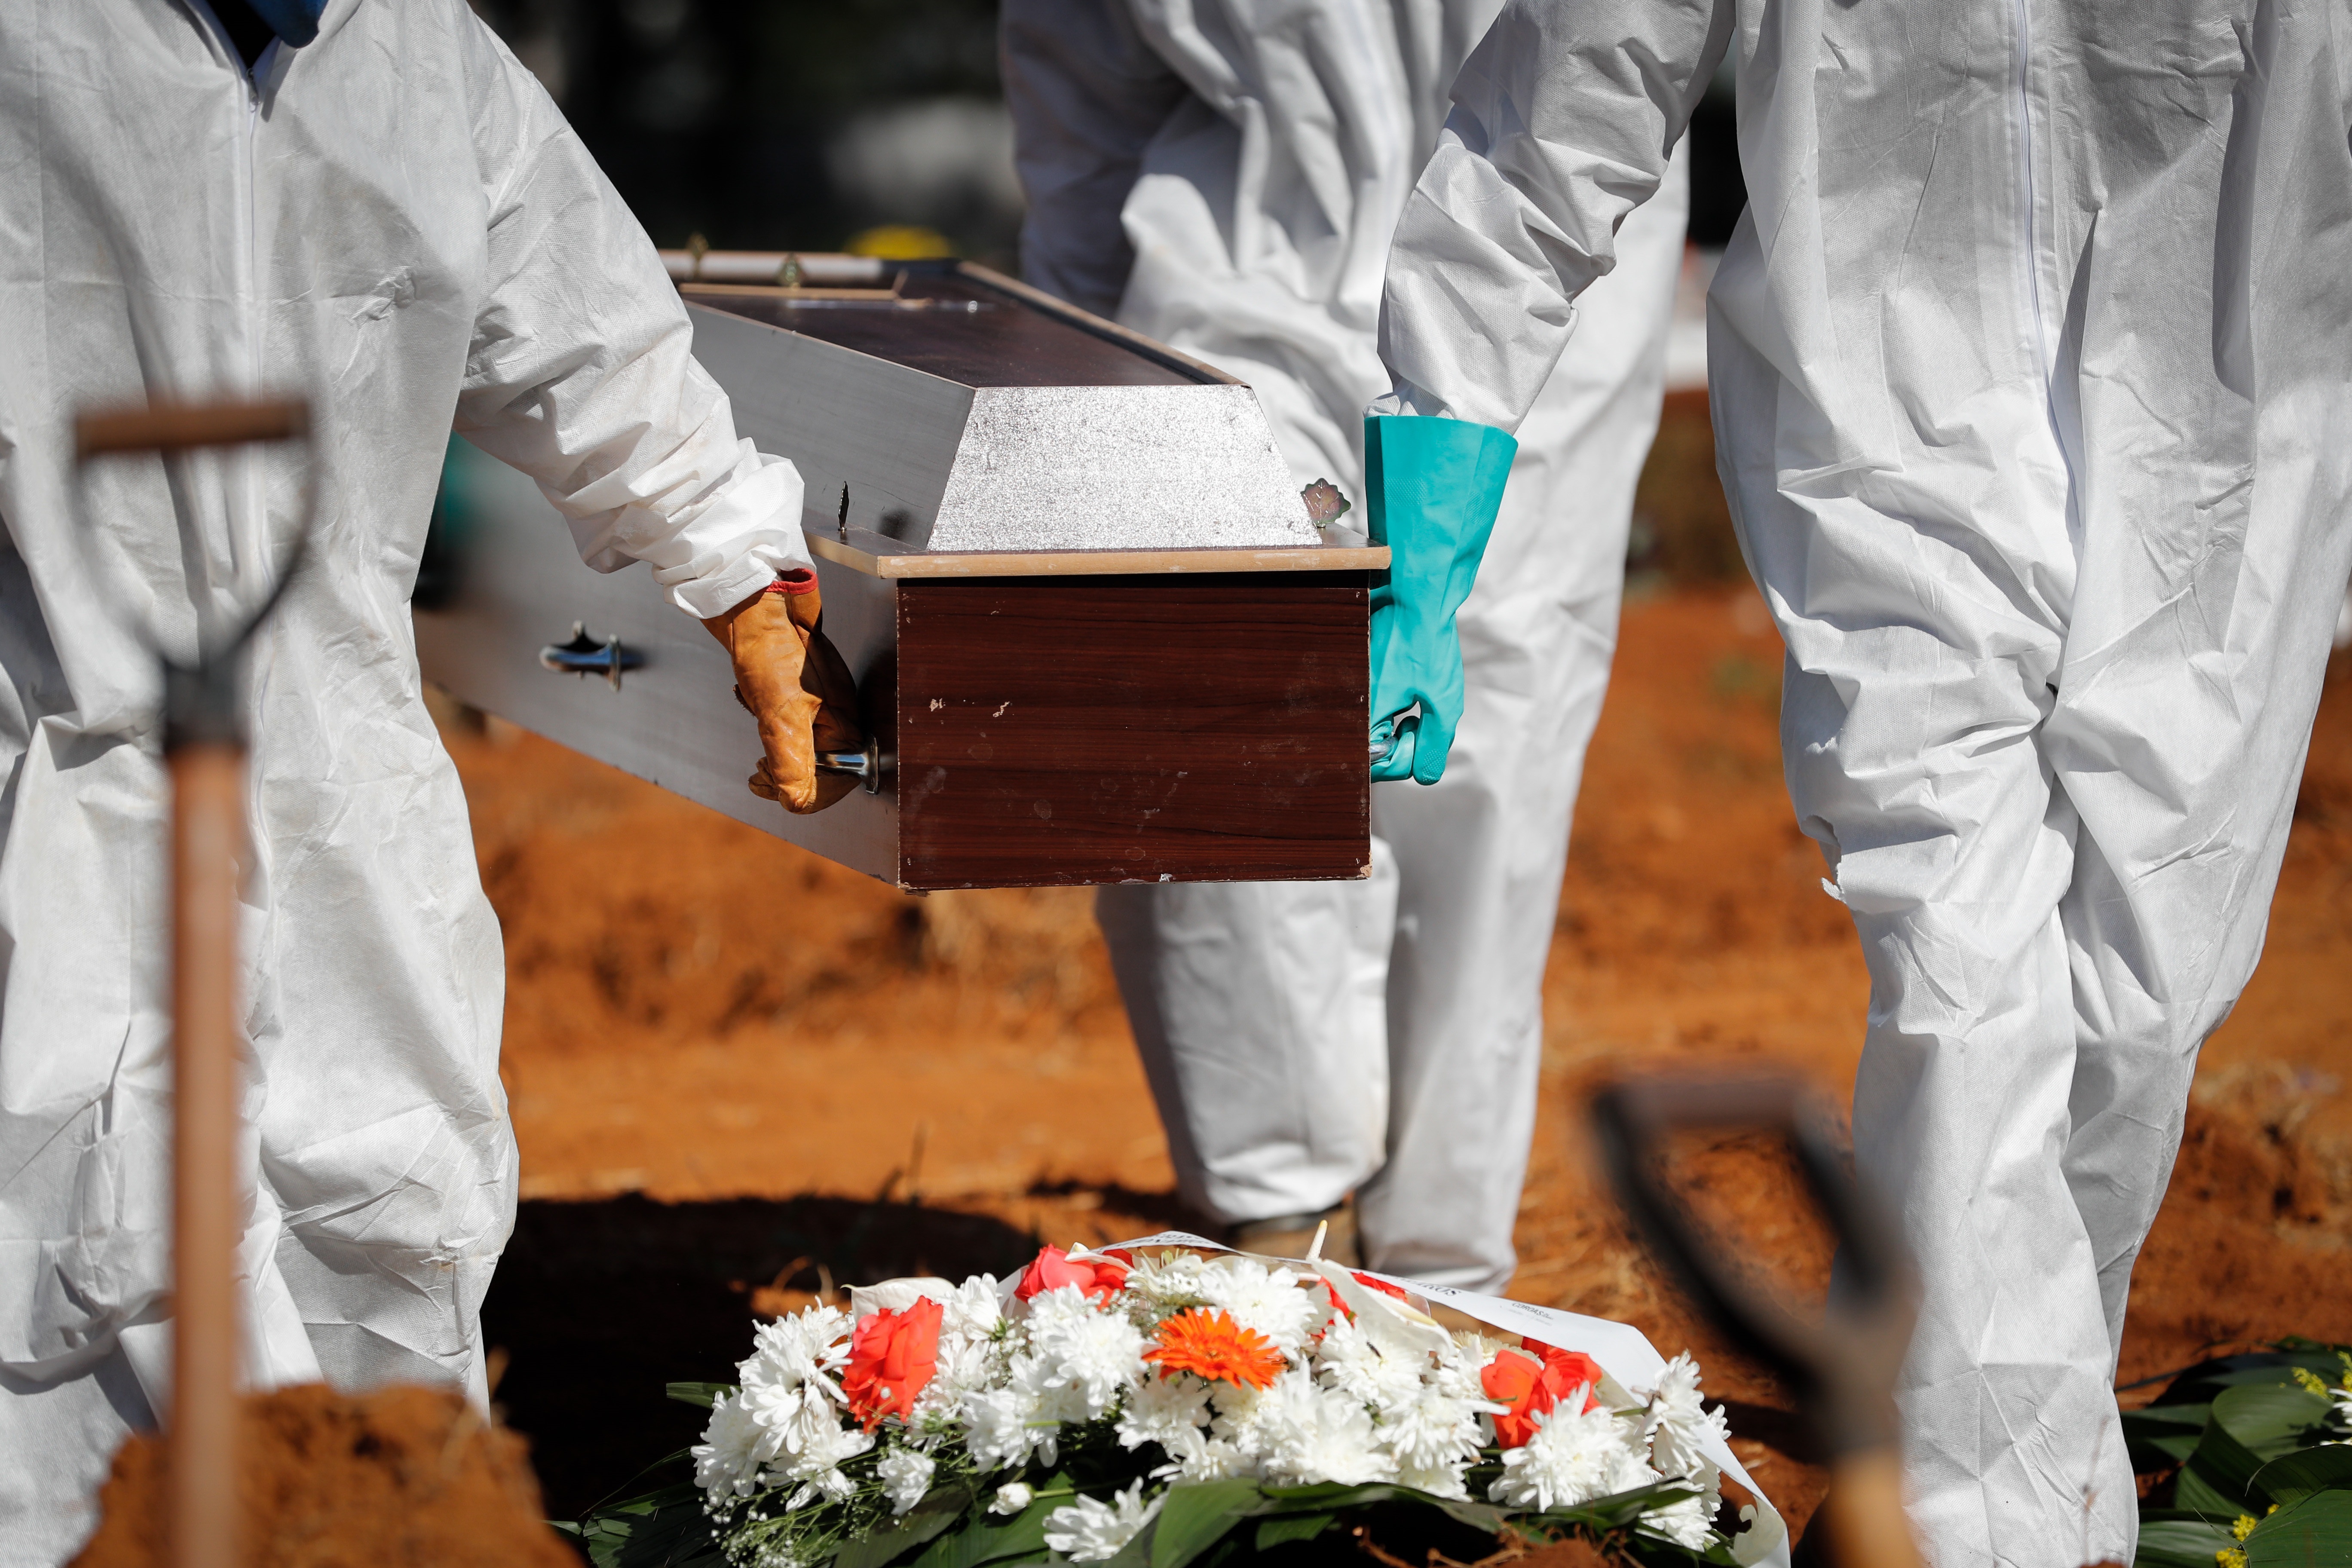 Hornos crematorios en Medellín tienen “fila” por alarmante aumento de  muertos de covid-19 - Infobae